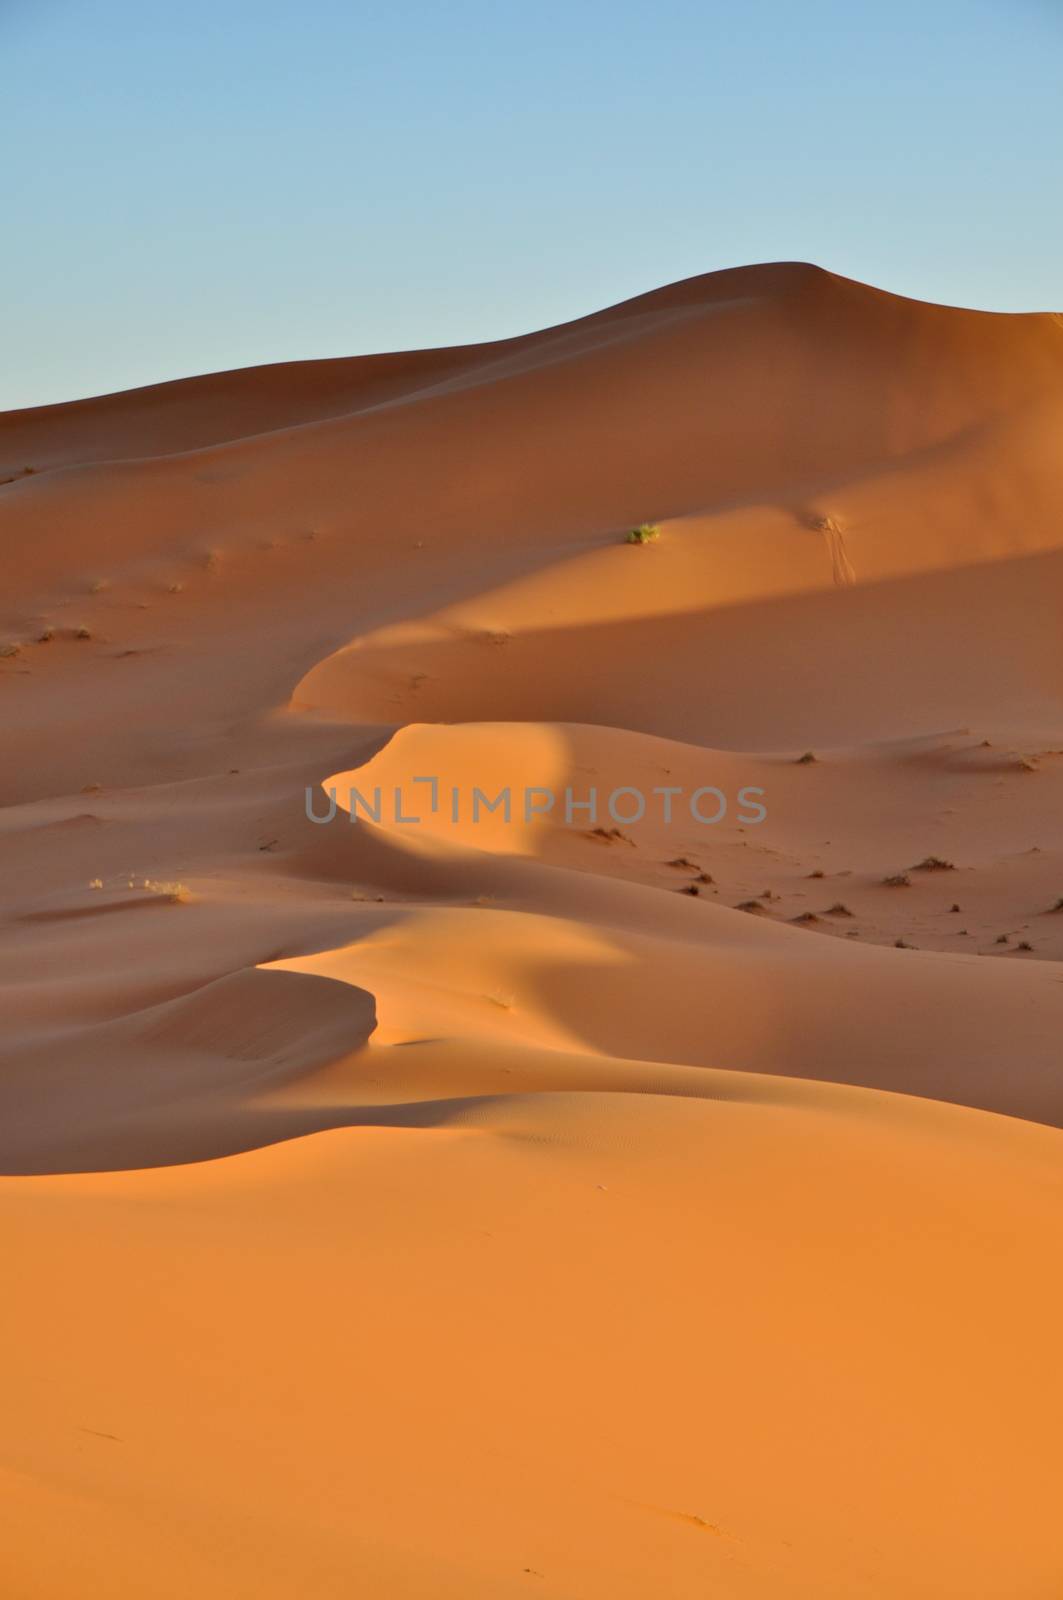 Merzouga desert in Morocco